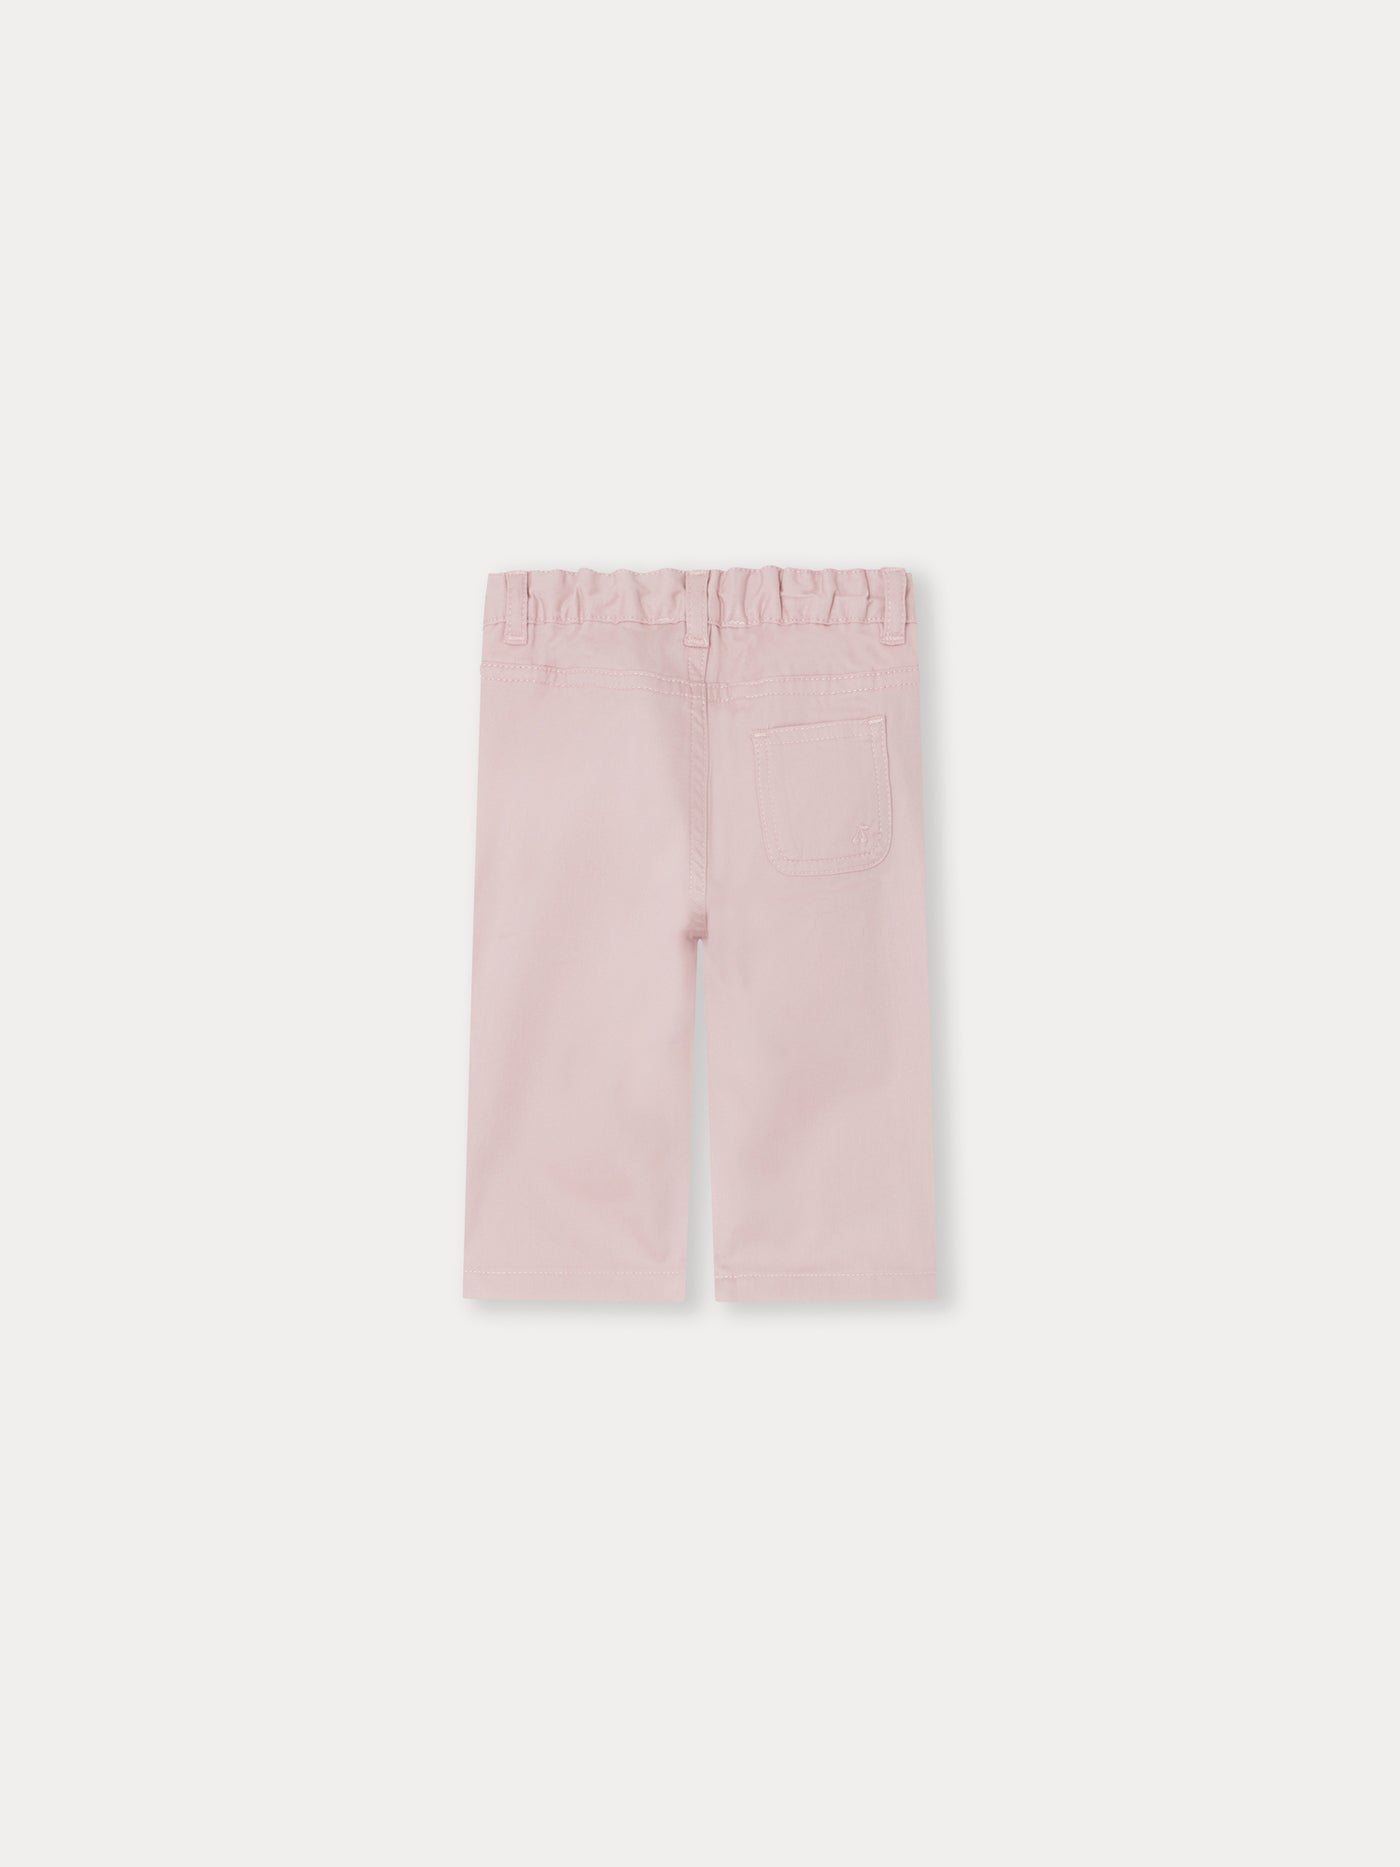 Pantalon Bellino rose fané